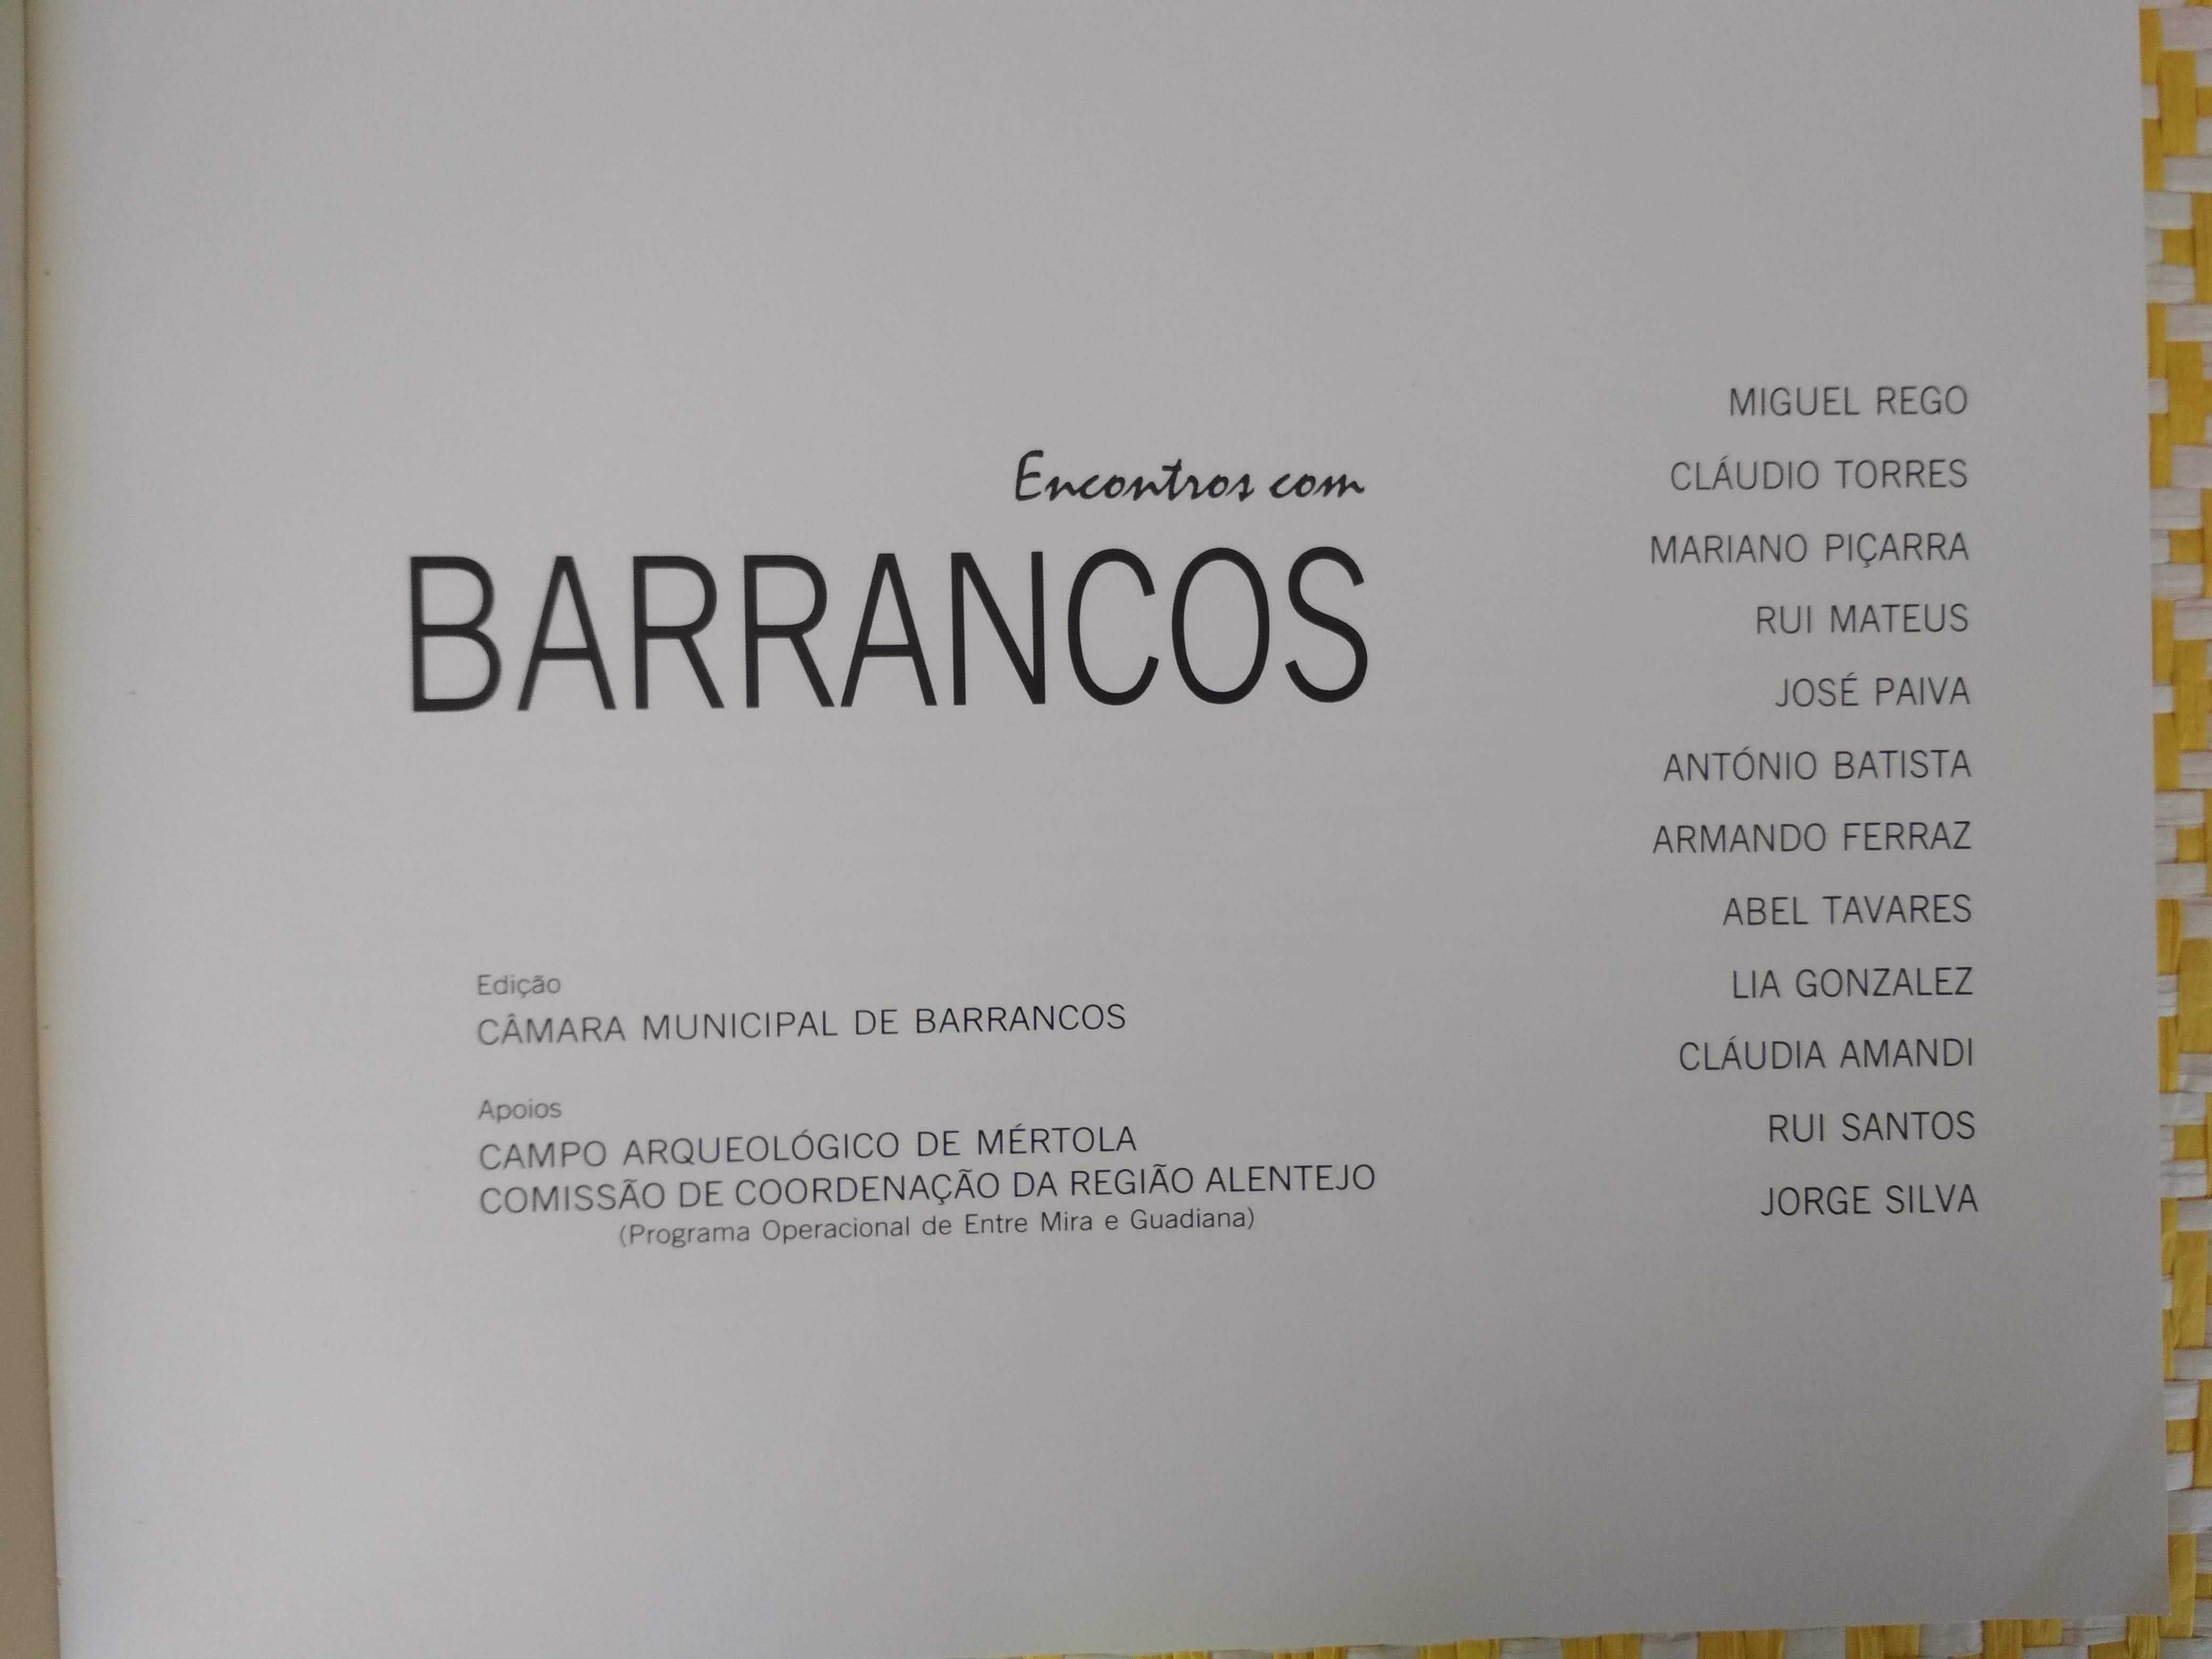 ENCONTROS COM BARRANCOS – 
Edição: Câmara Municipal de Barrancos